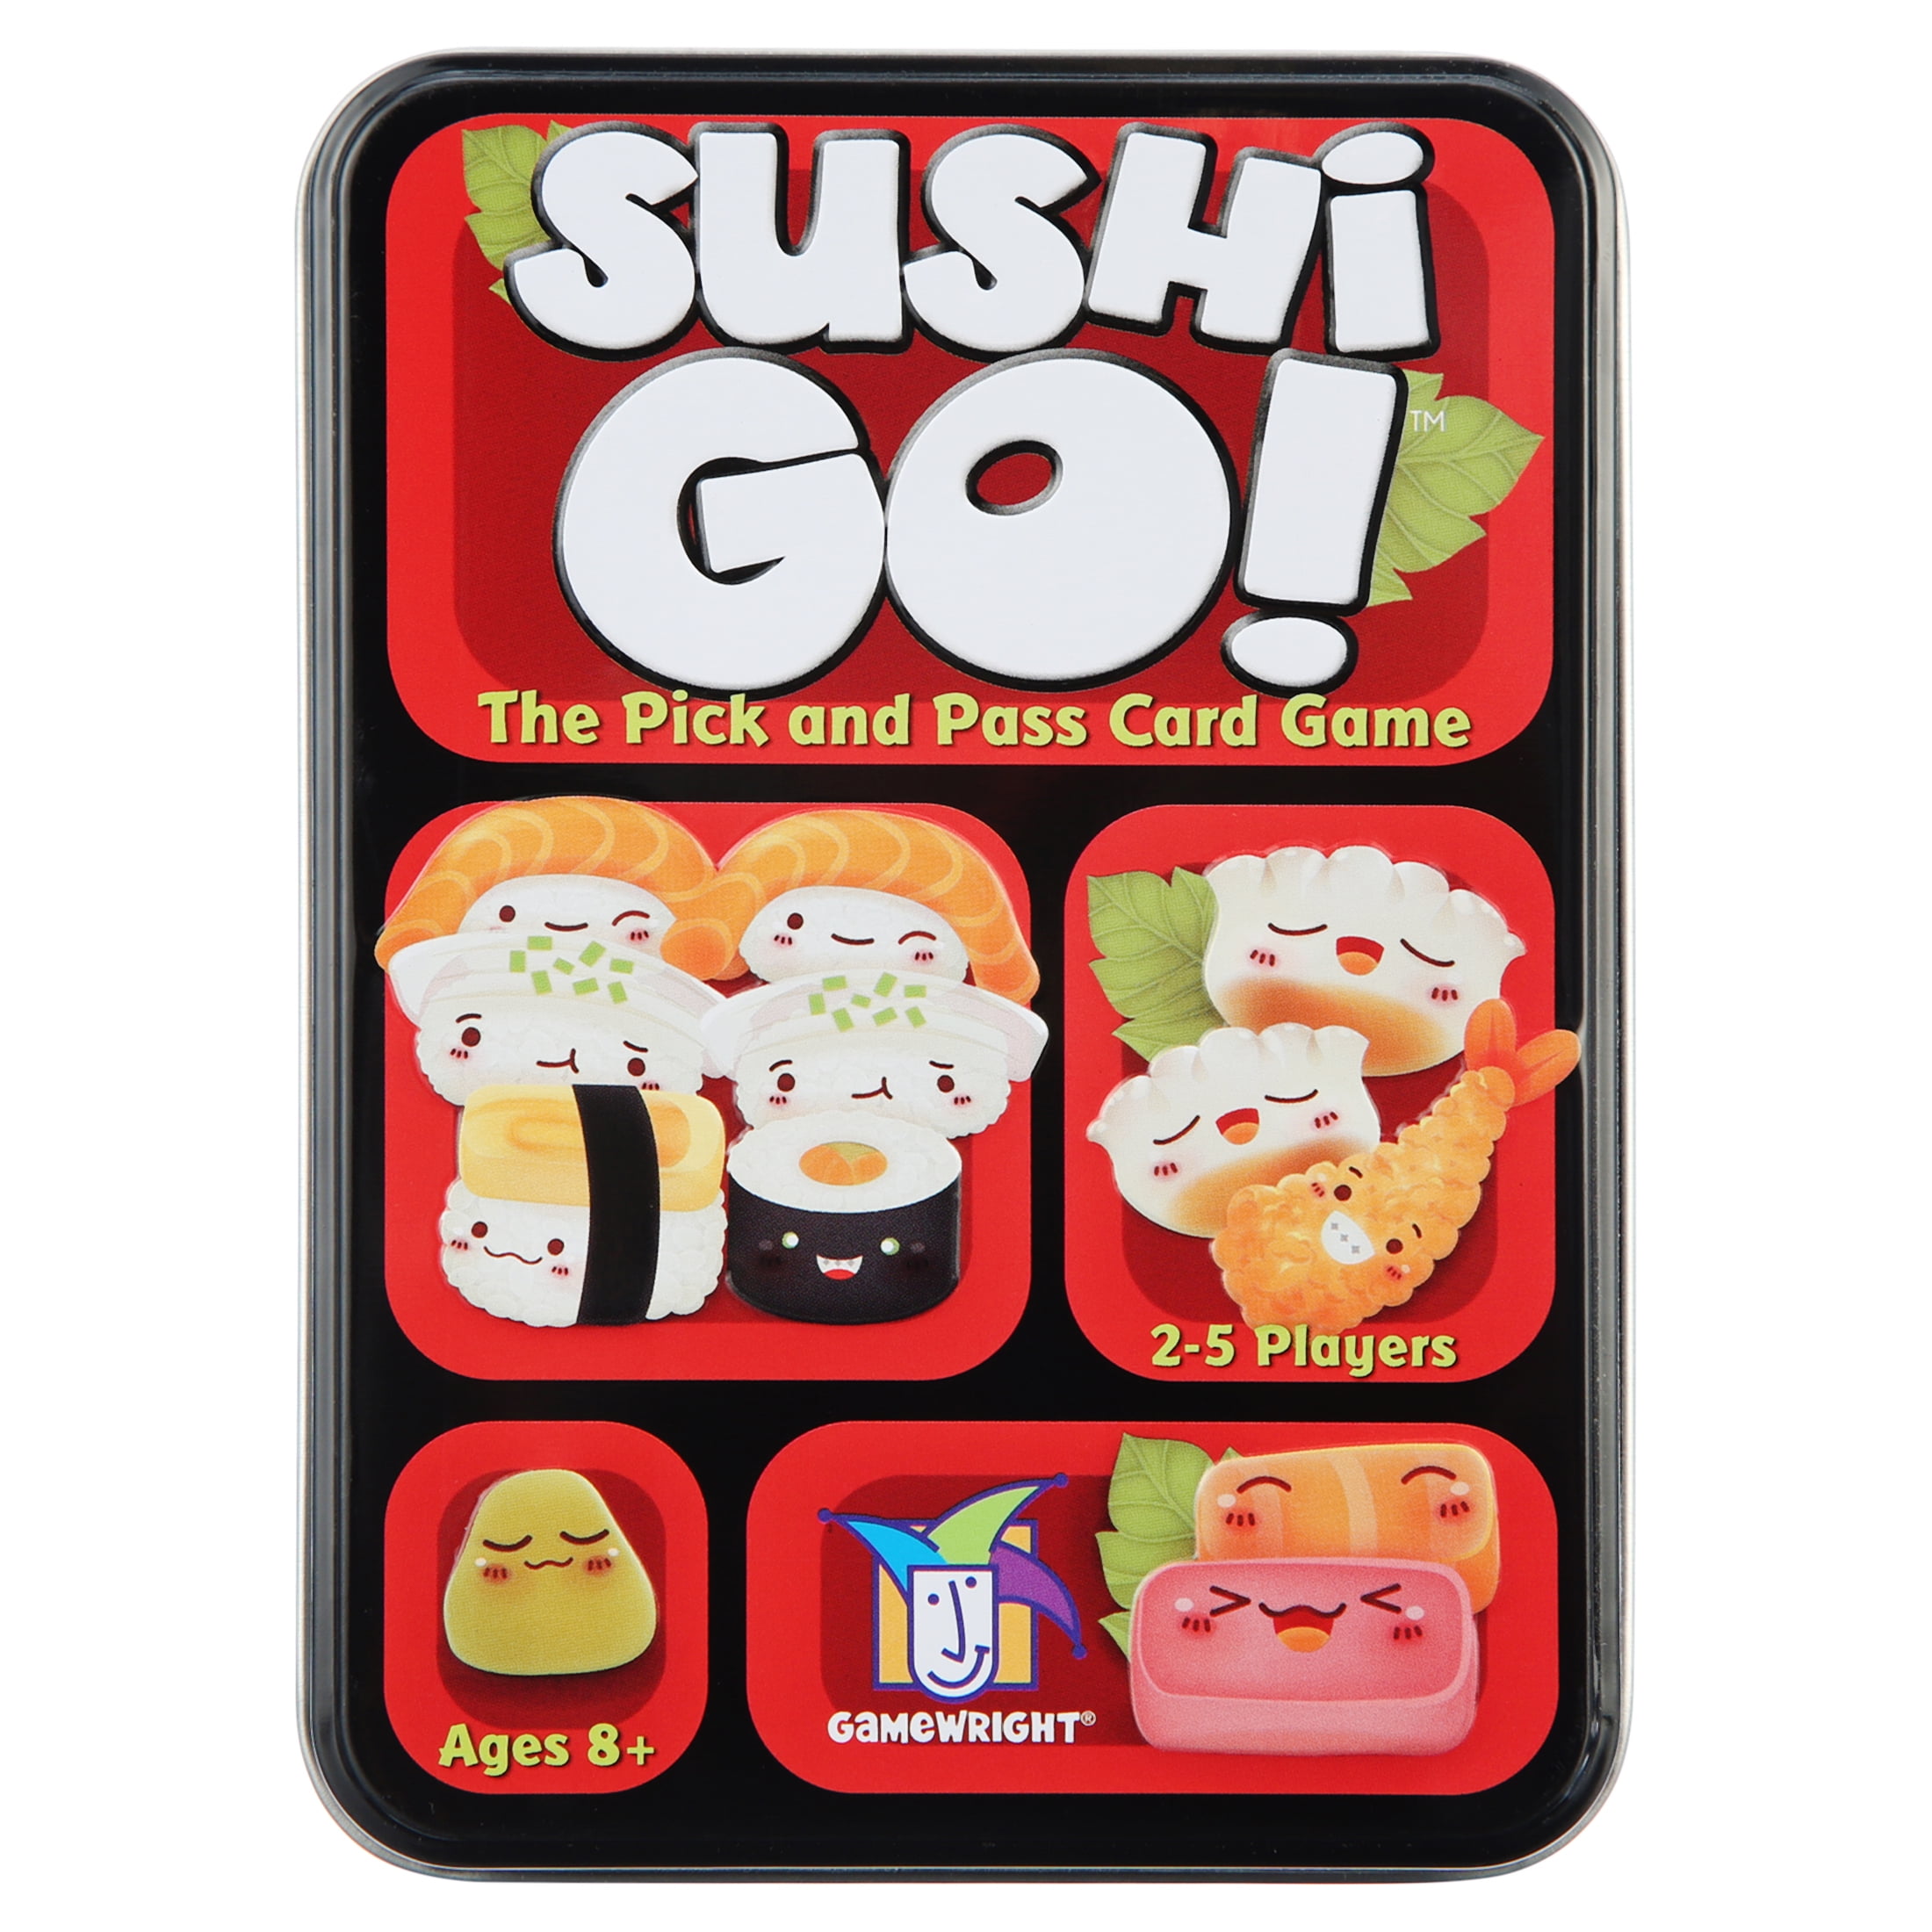 NEW   SUSHI GO  Family Card Game Tin Box  *** Family FUN**** 